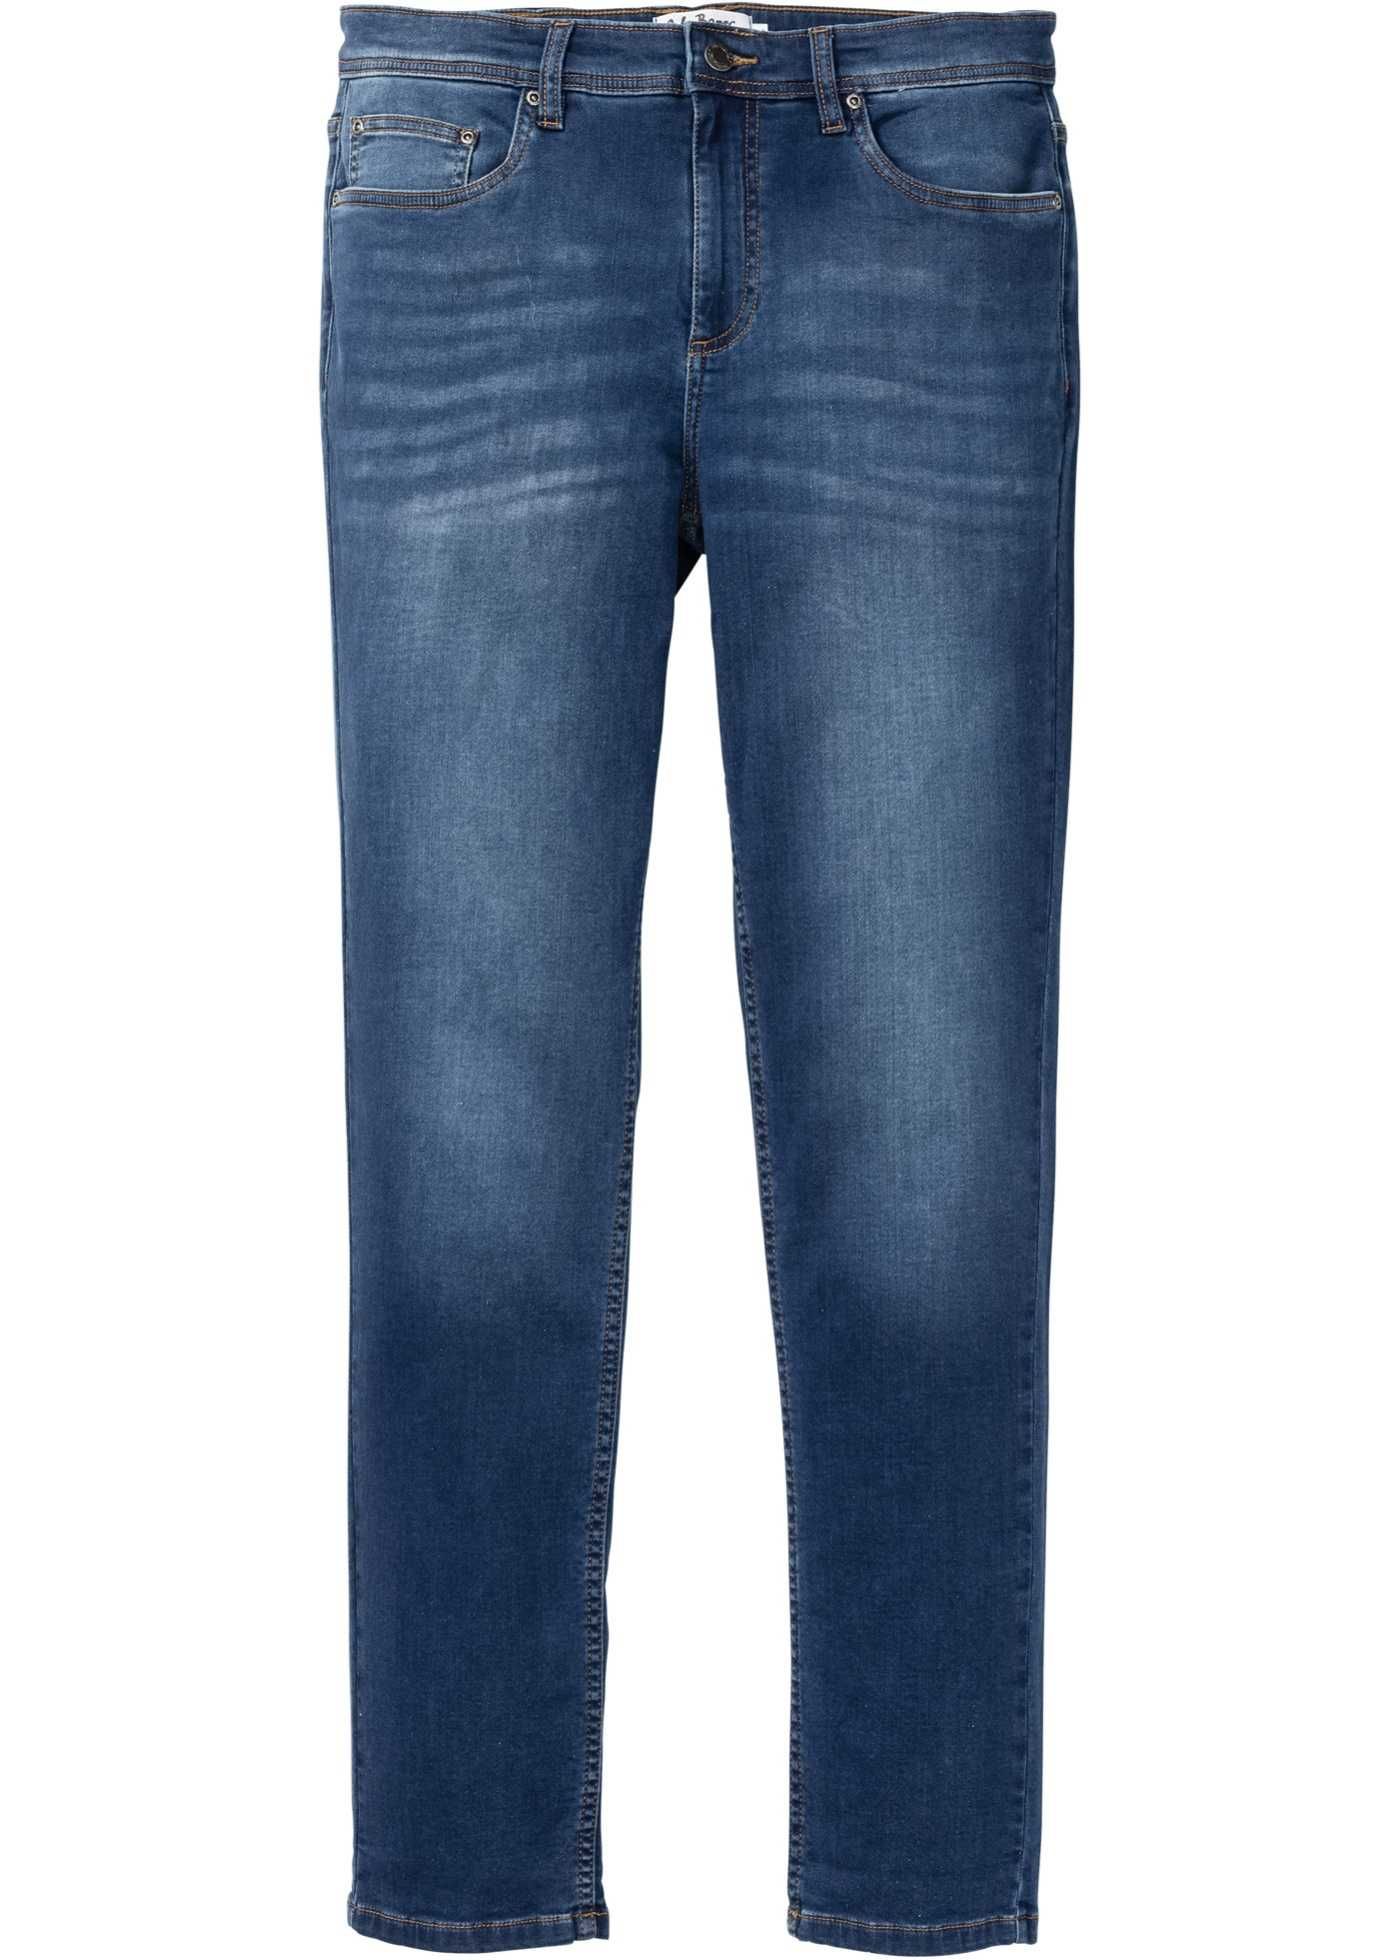 Jeans męskie, klasyczne stretch Rozmiar 54